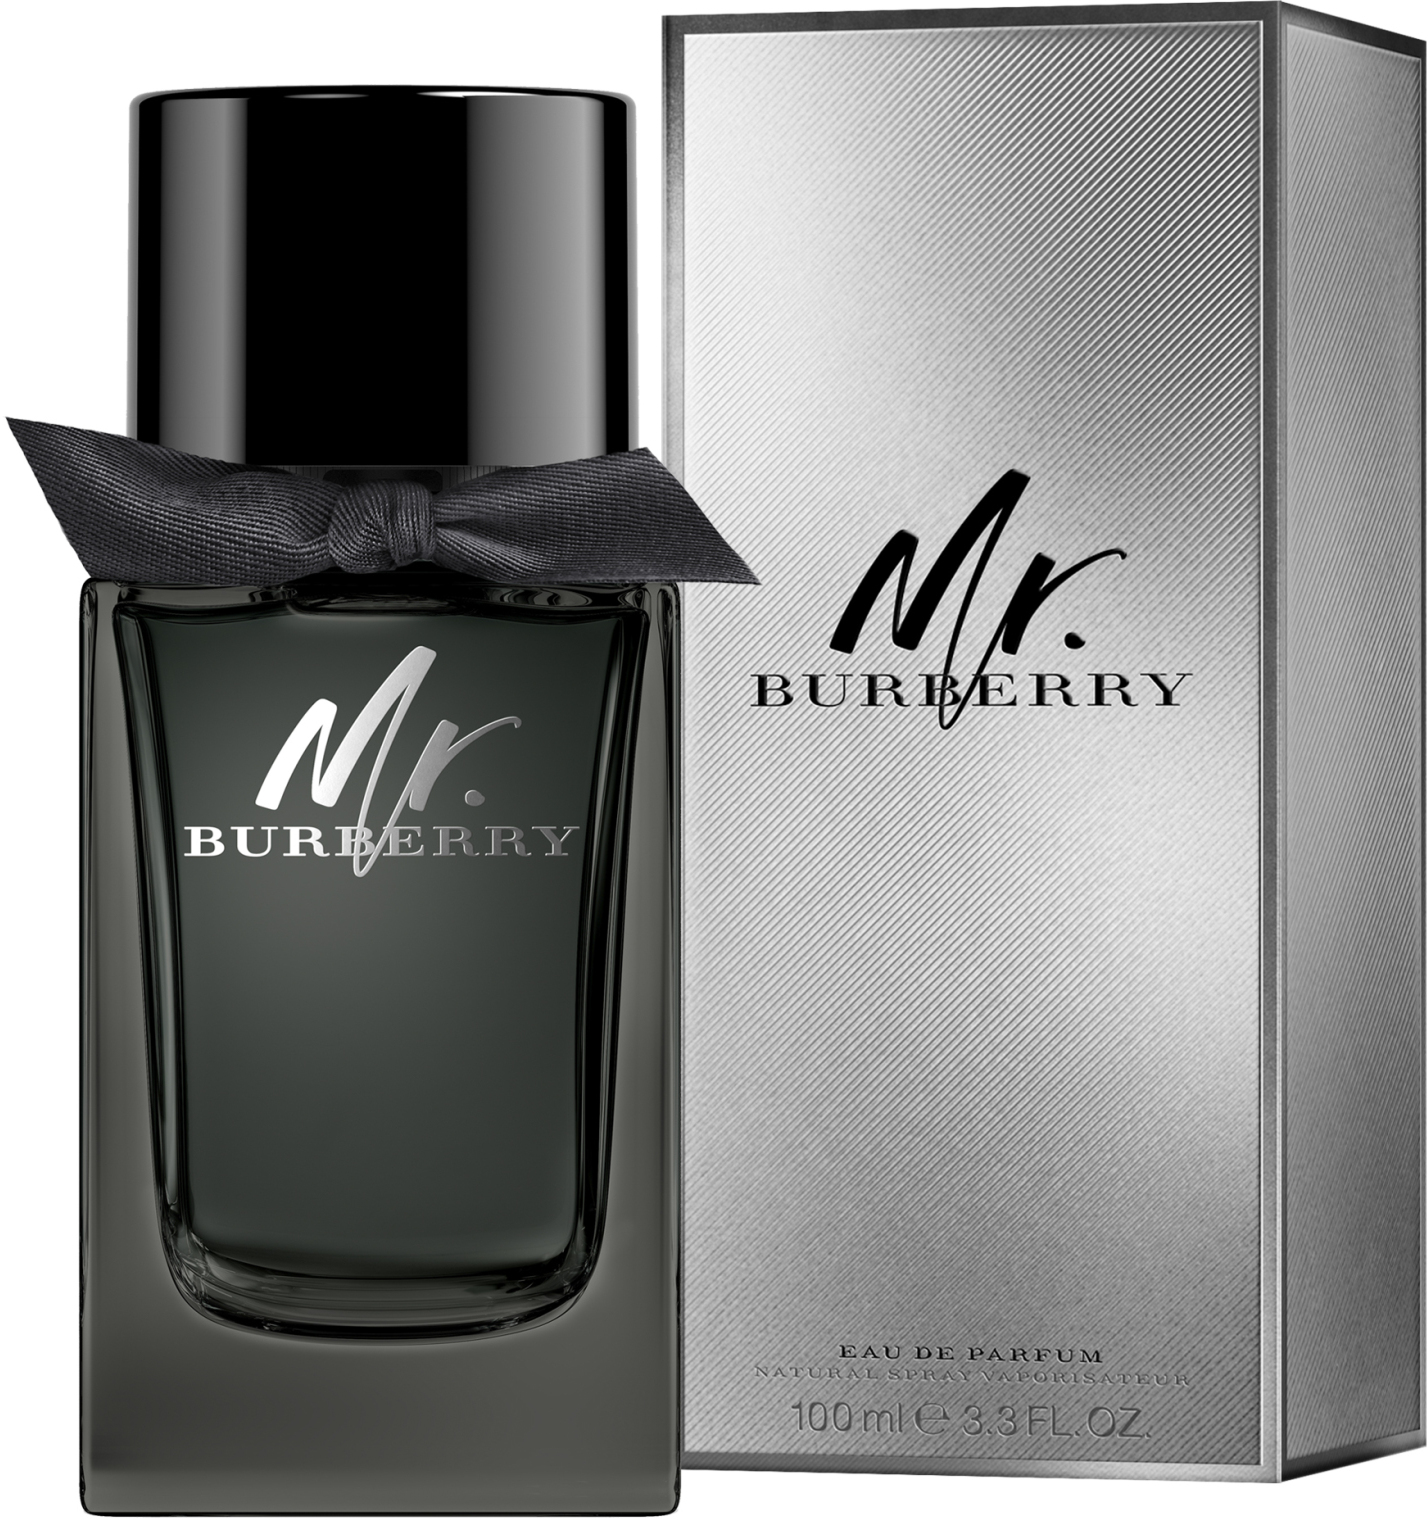 burberry mr burberry eau de parfum 100ml